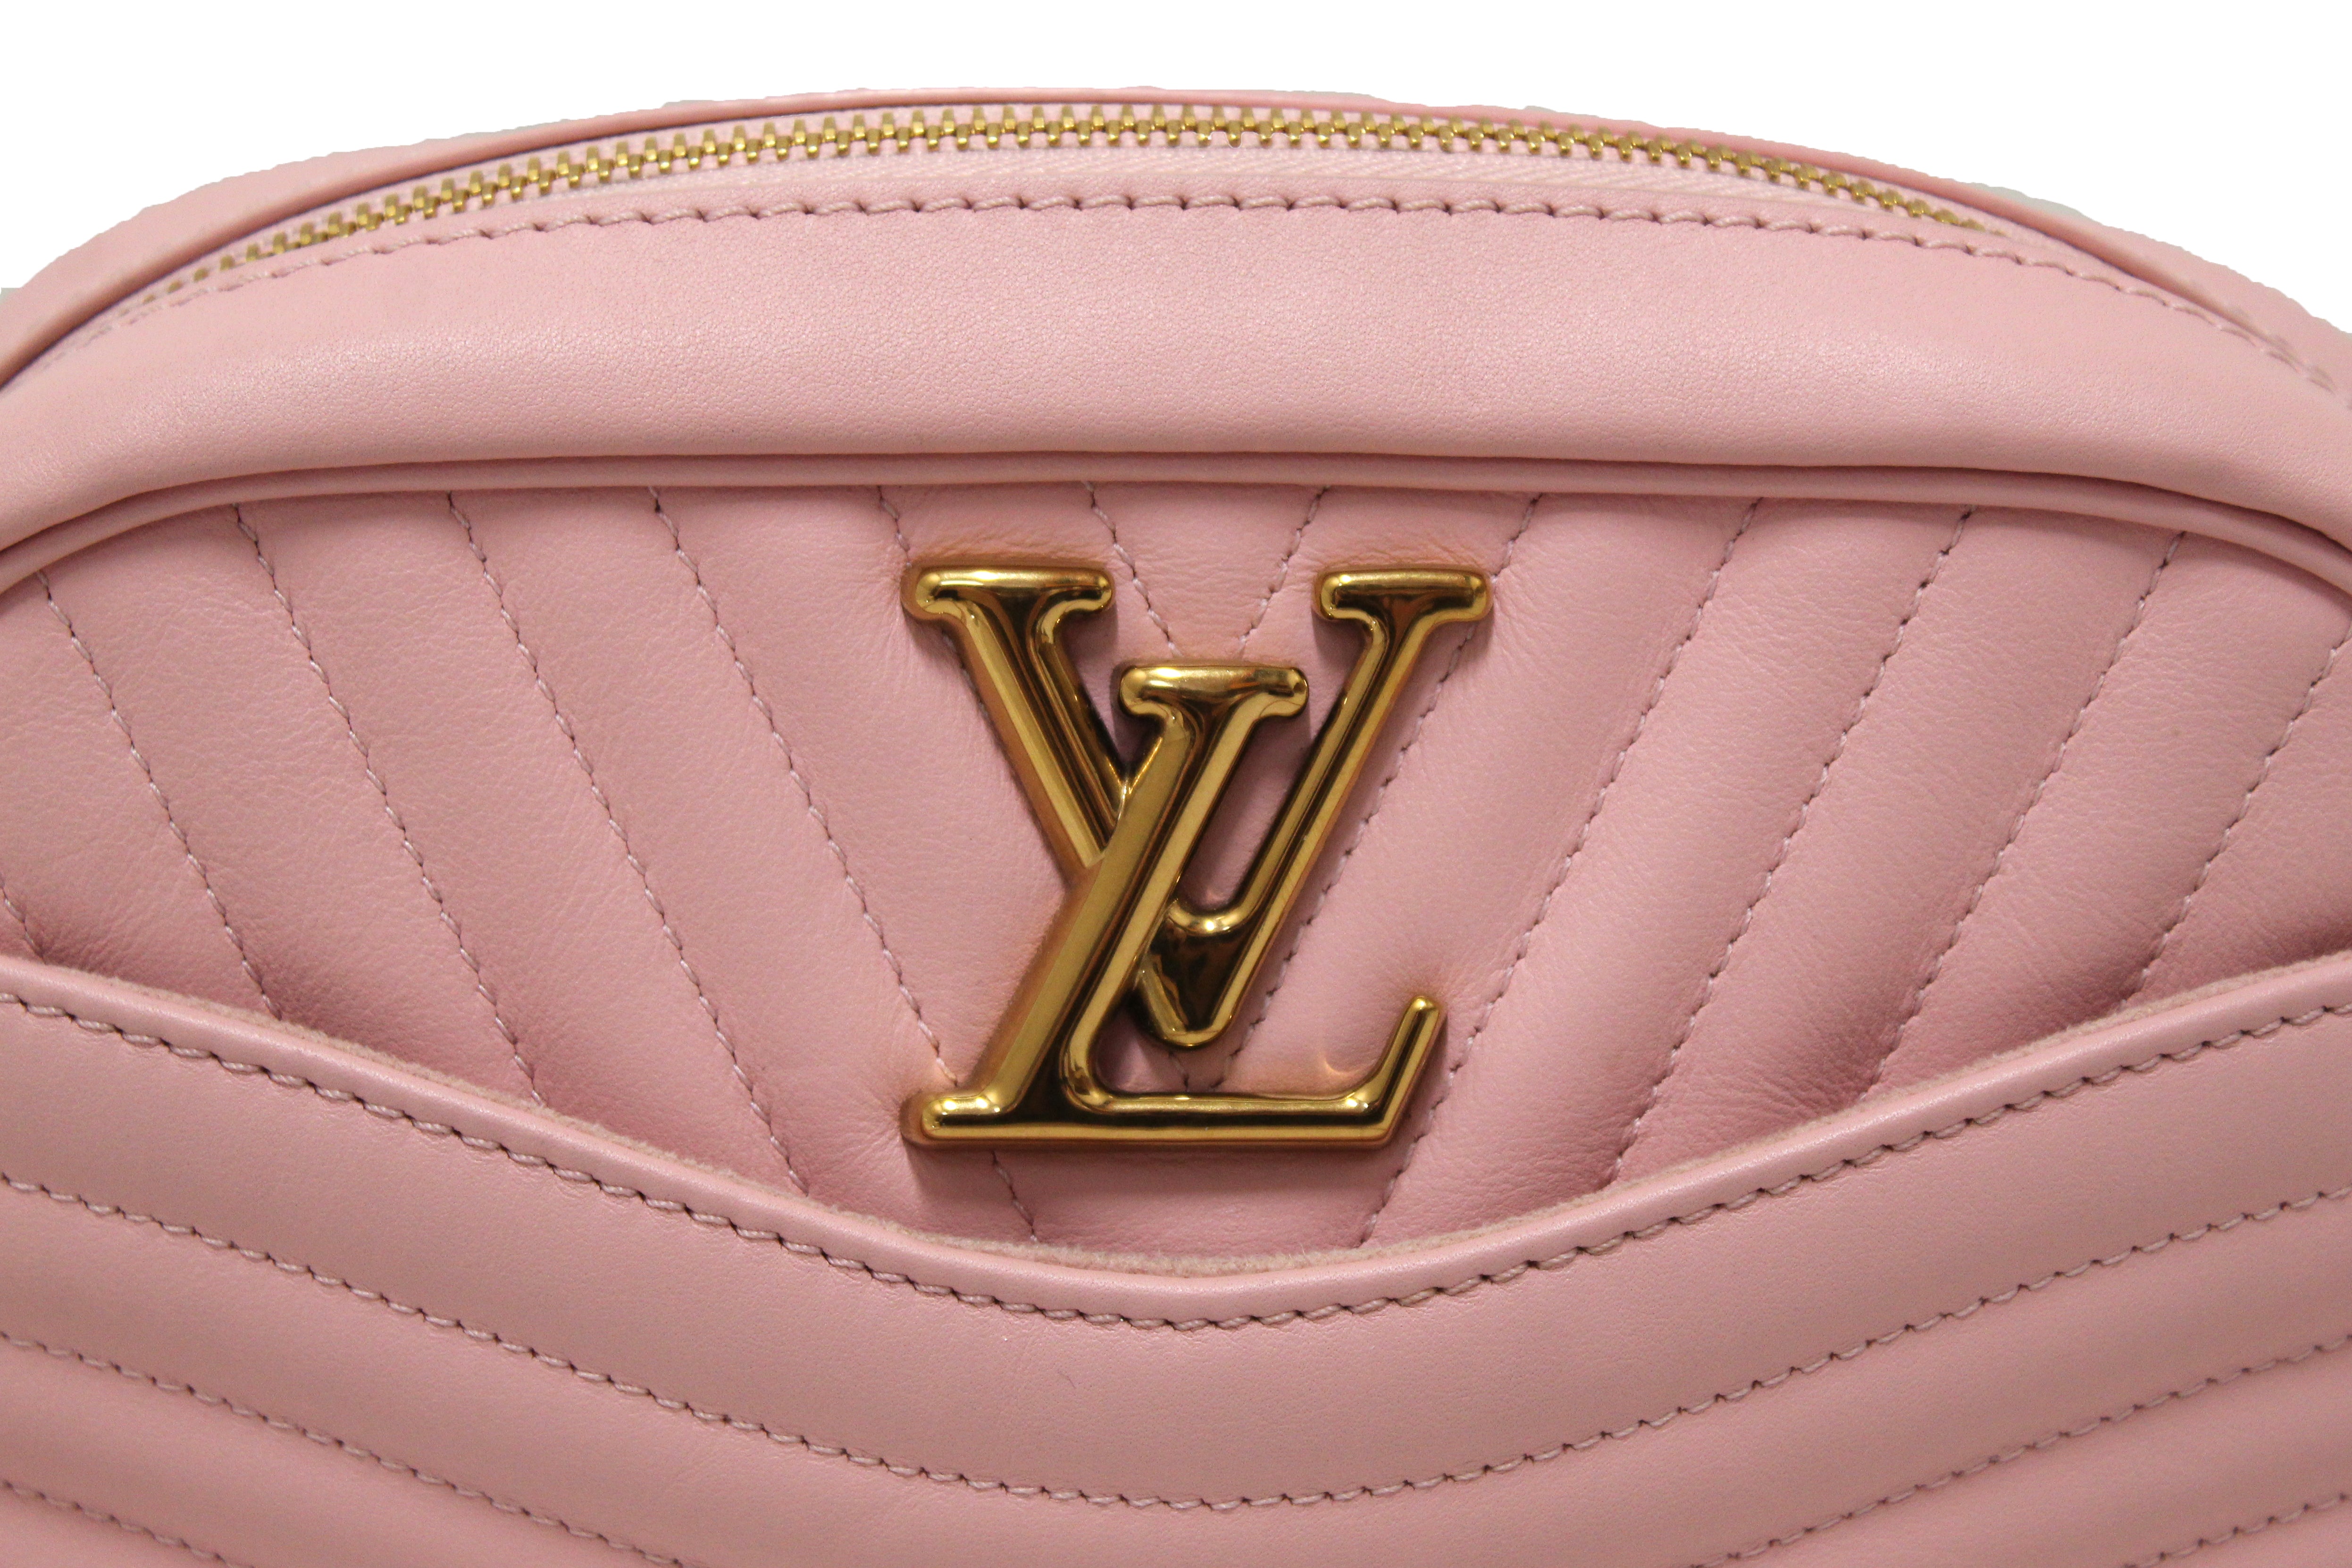 Louis Vuitton Calfskin New Wave Camera Bag, Louis Vuitton Handbags